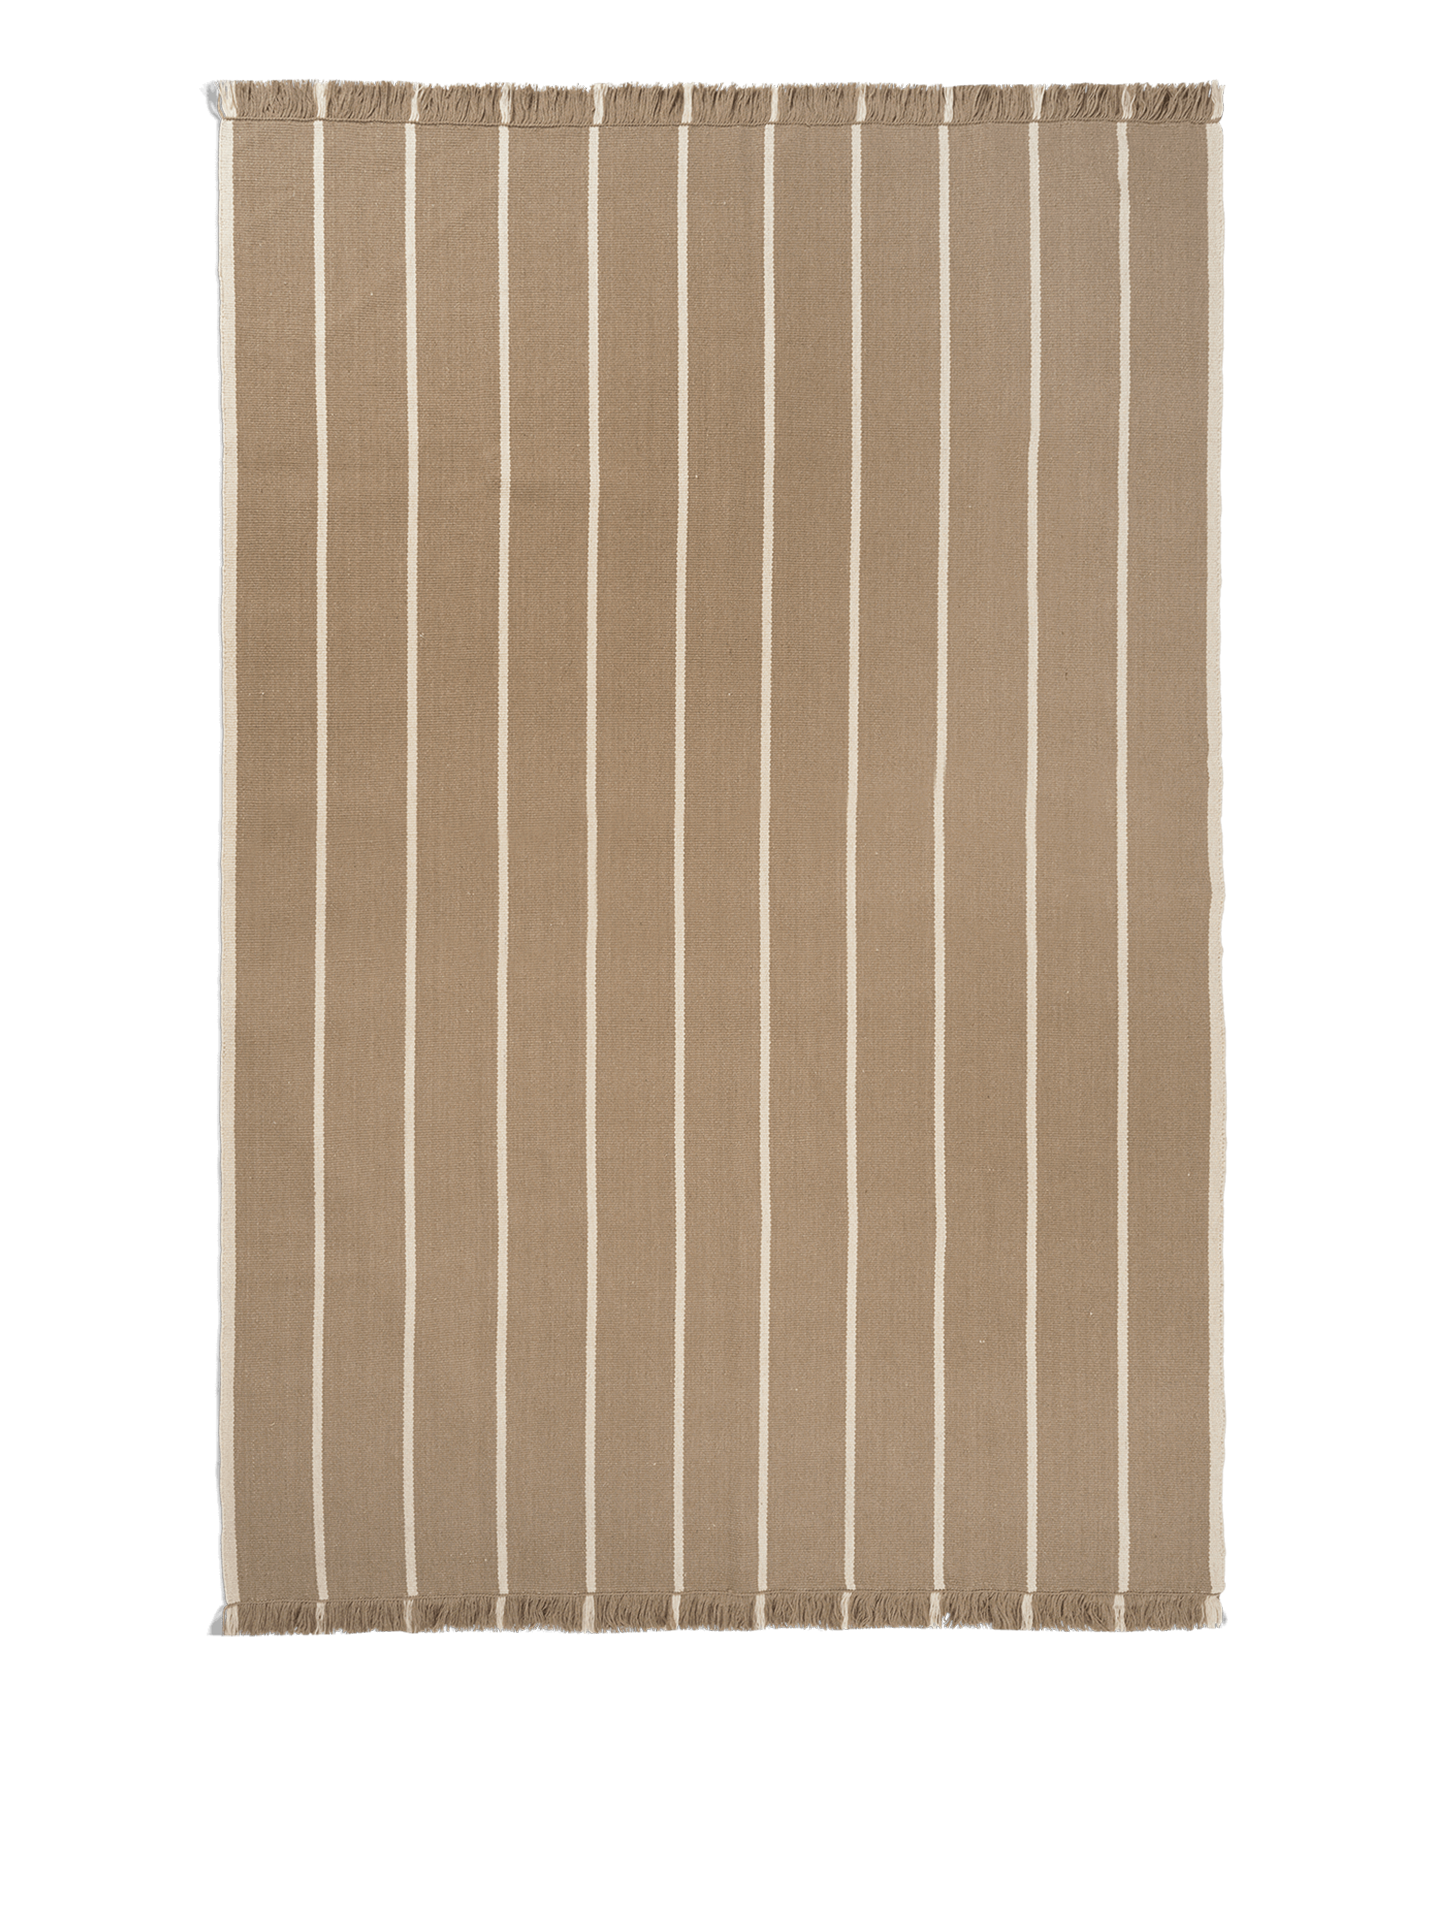 Ferm Living Rustige kelim tapijt 200 x 300 donker zand/uit wit wit